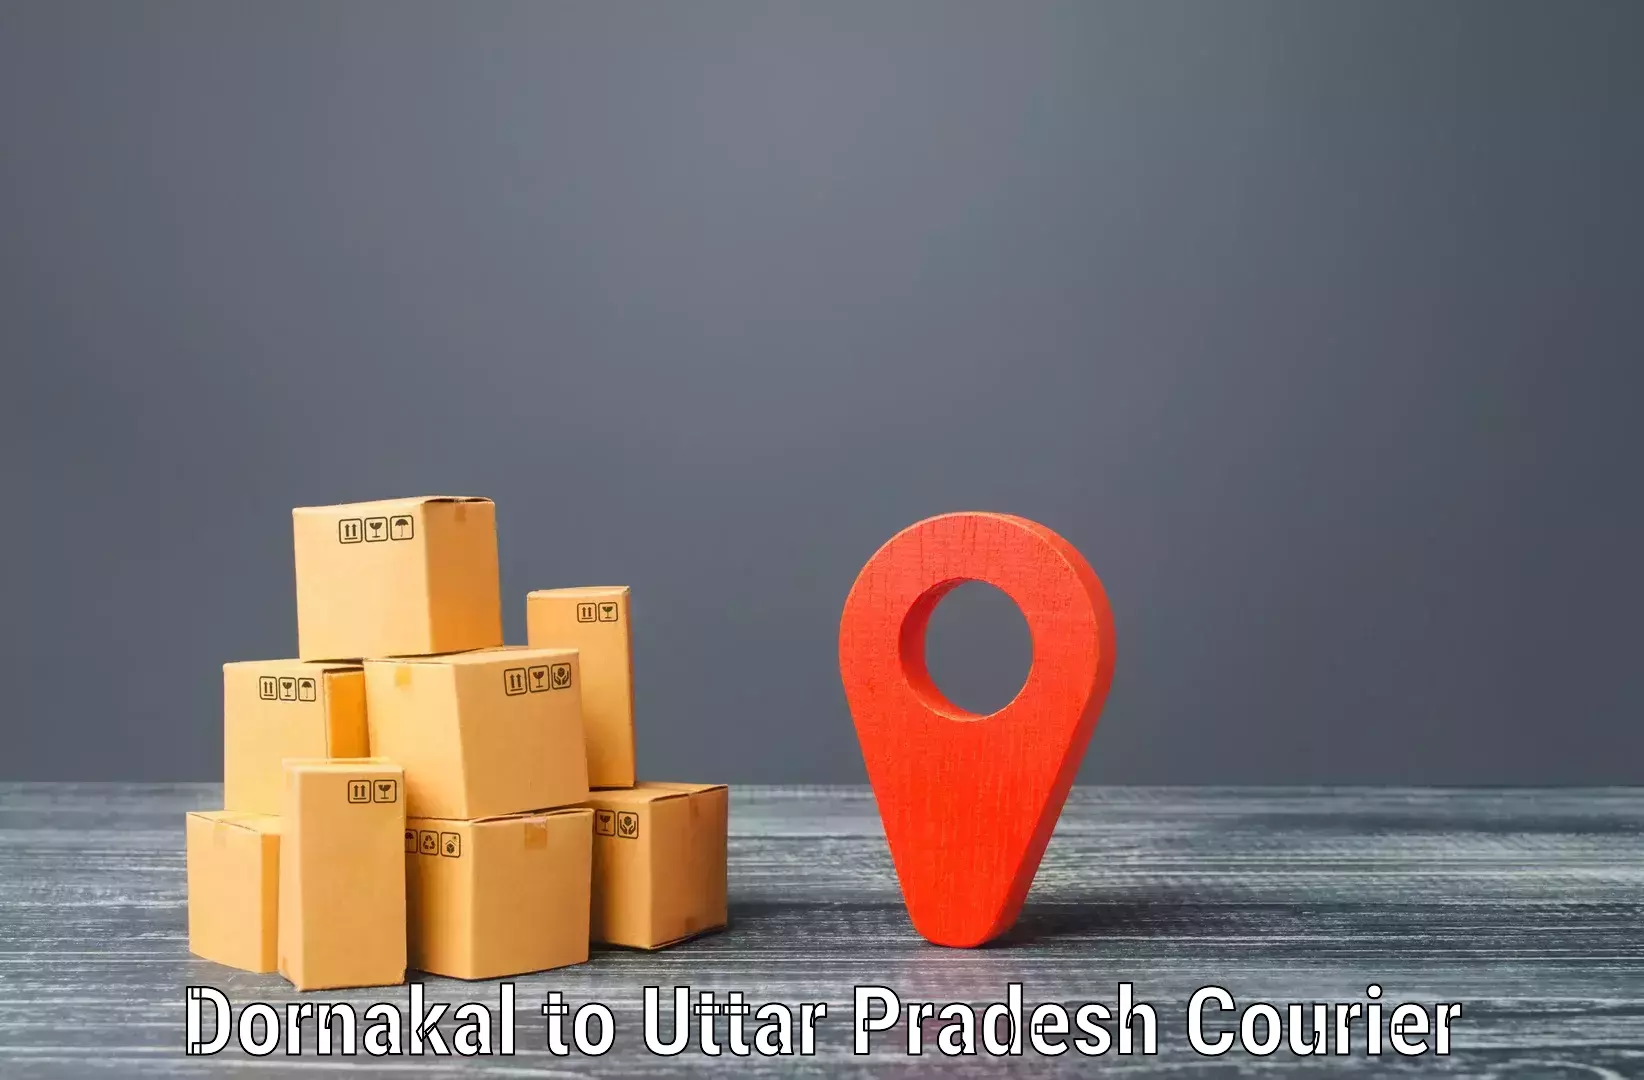 Quality courier services Dornakal to Gauri Bazar